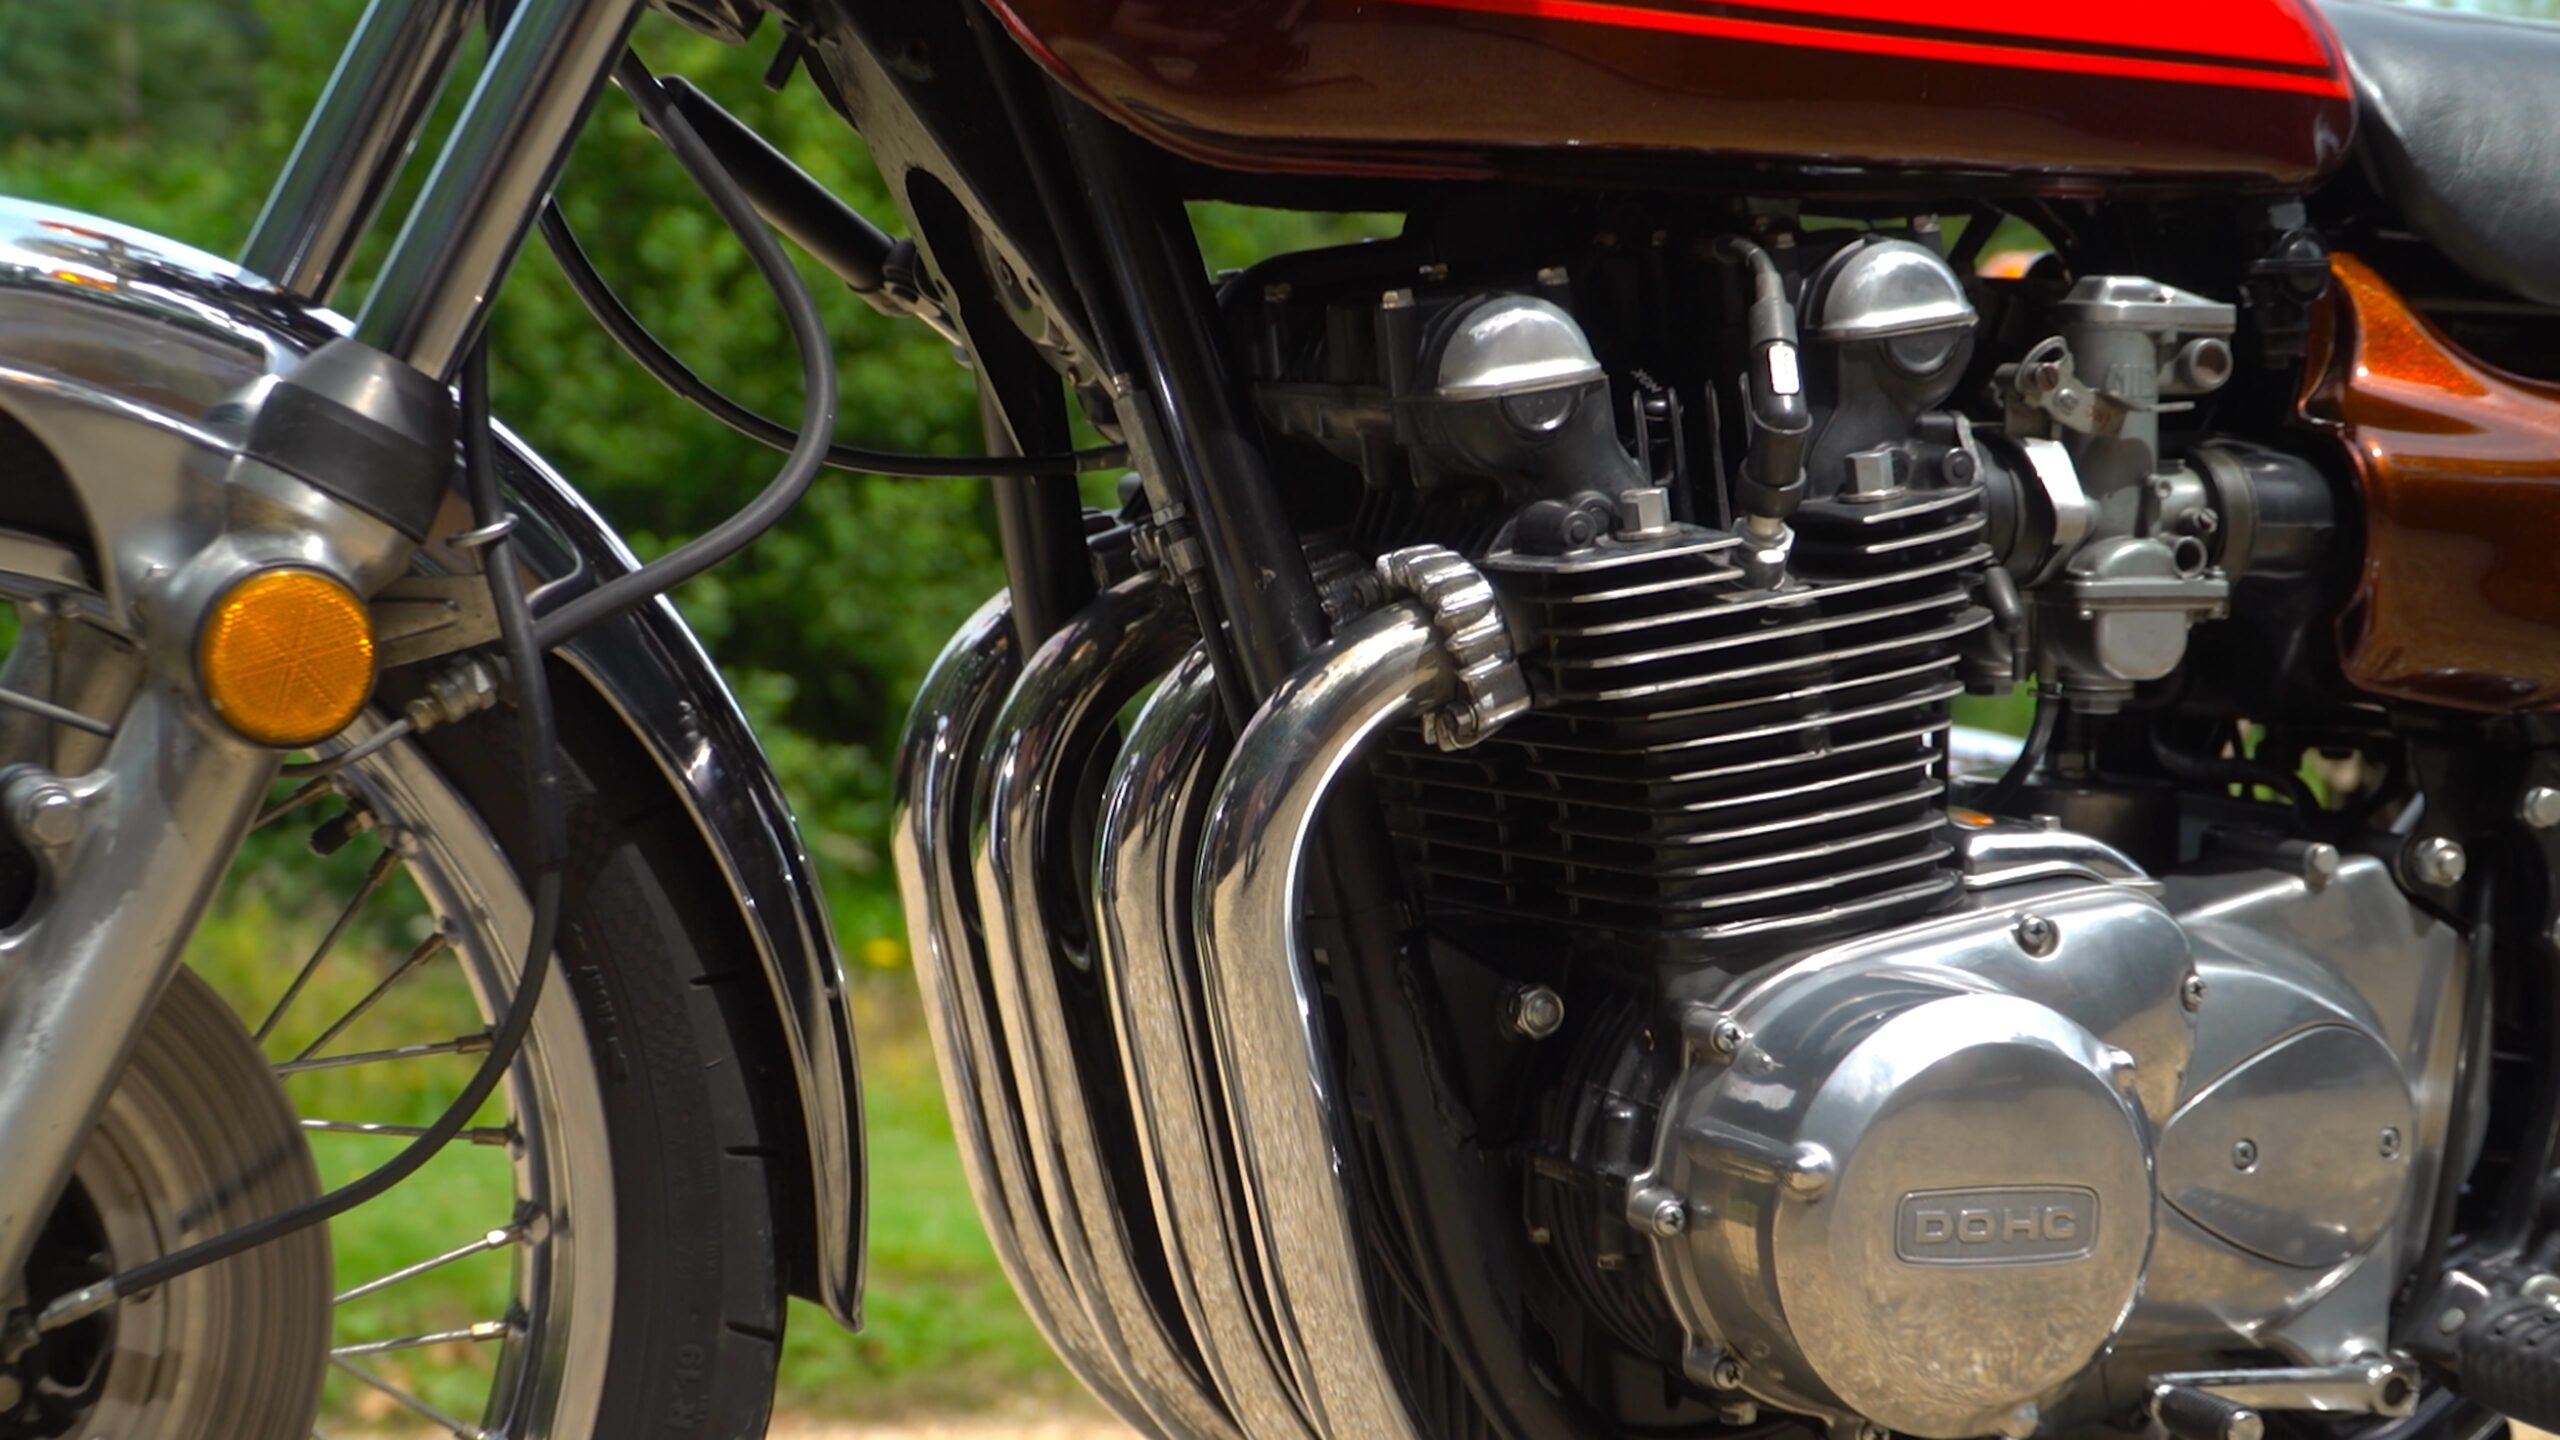 Kawasaki Z1 – The King of Motorcycles?